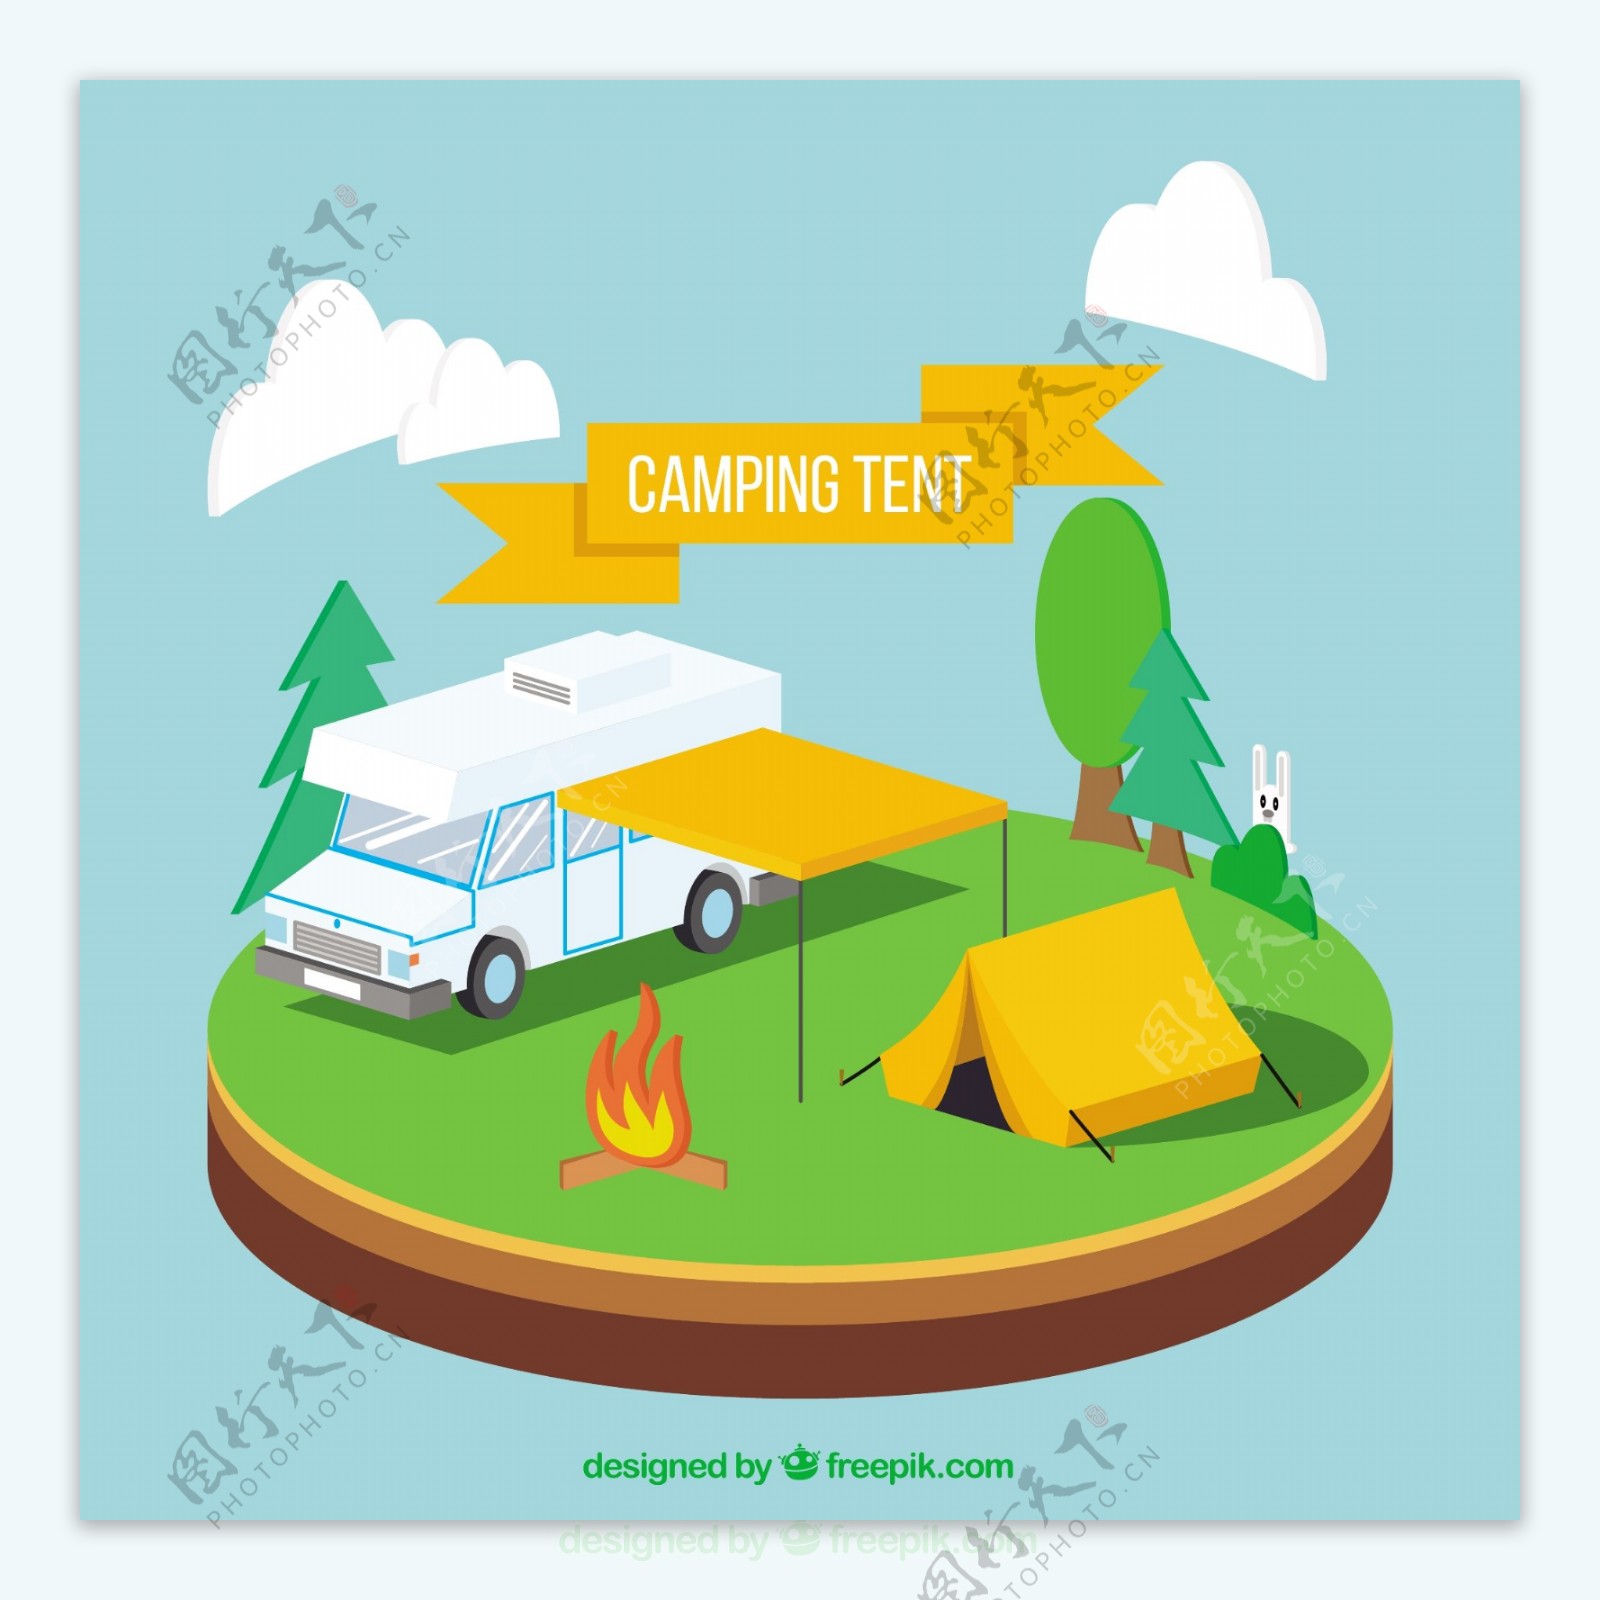 野营帐篷和野营帐篷